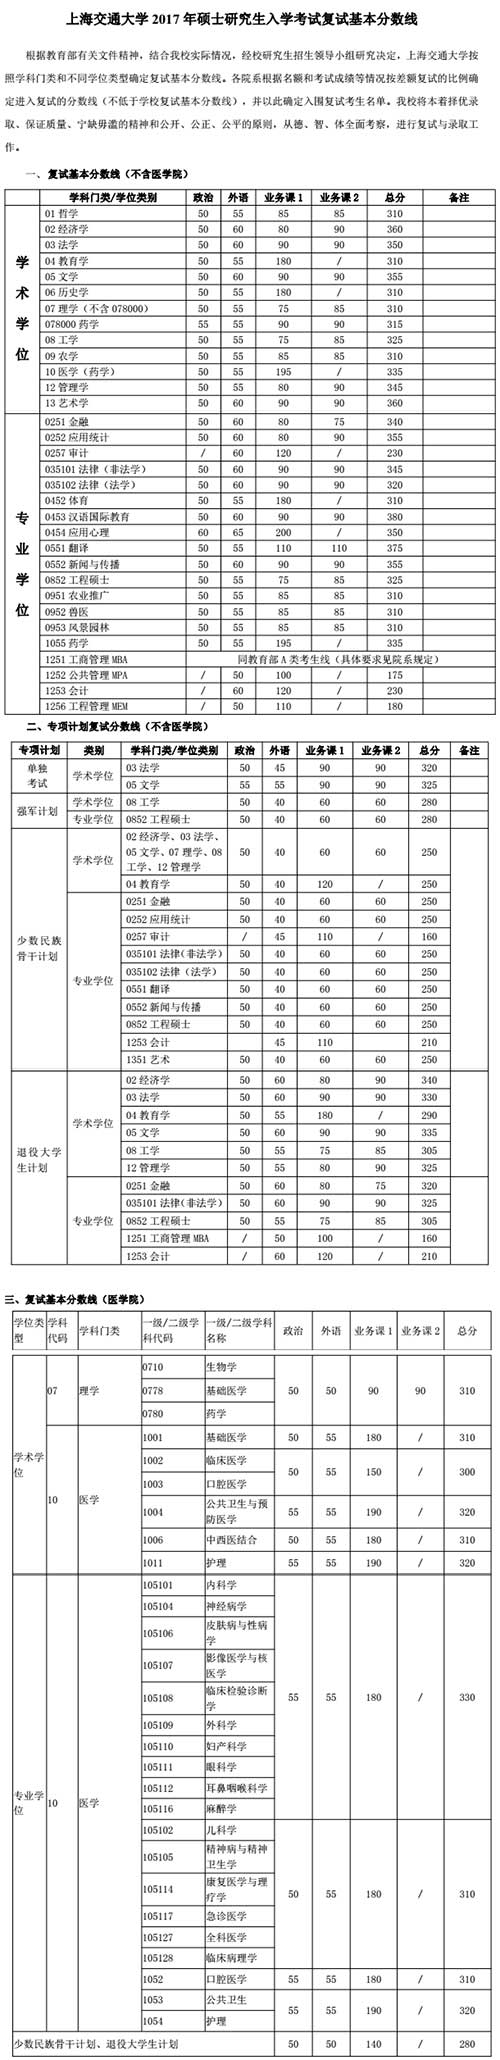 上海交通大学2017年考研分数线.jpg